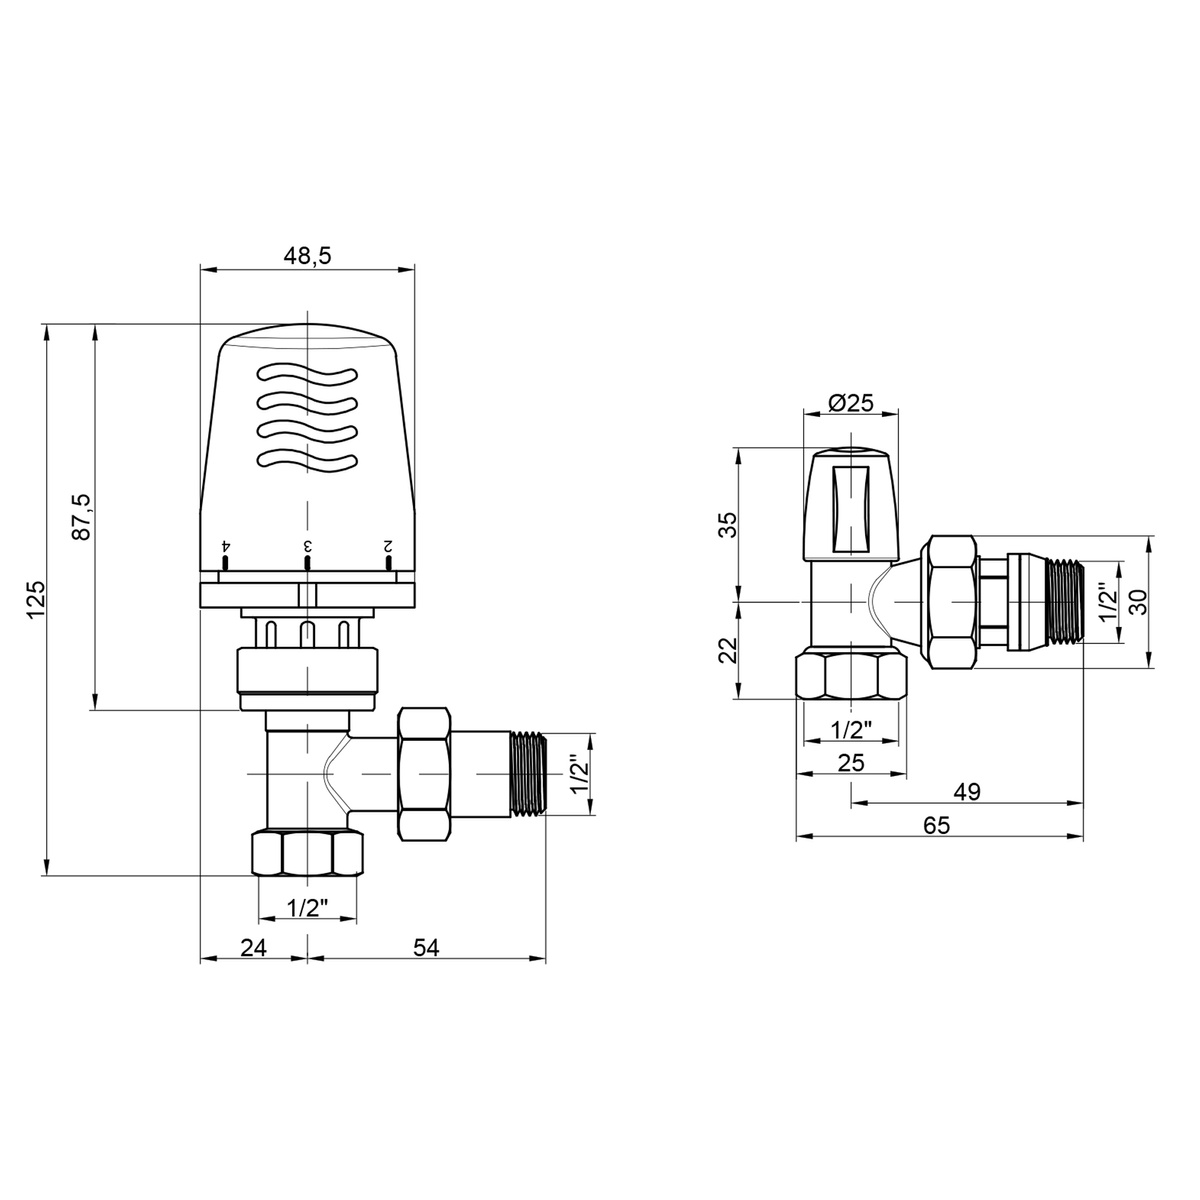 Термокомплект для радиатора ICMA угловой 1/2"x1/2" с преднастройкой с боковым подключением 82KITGAD061100